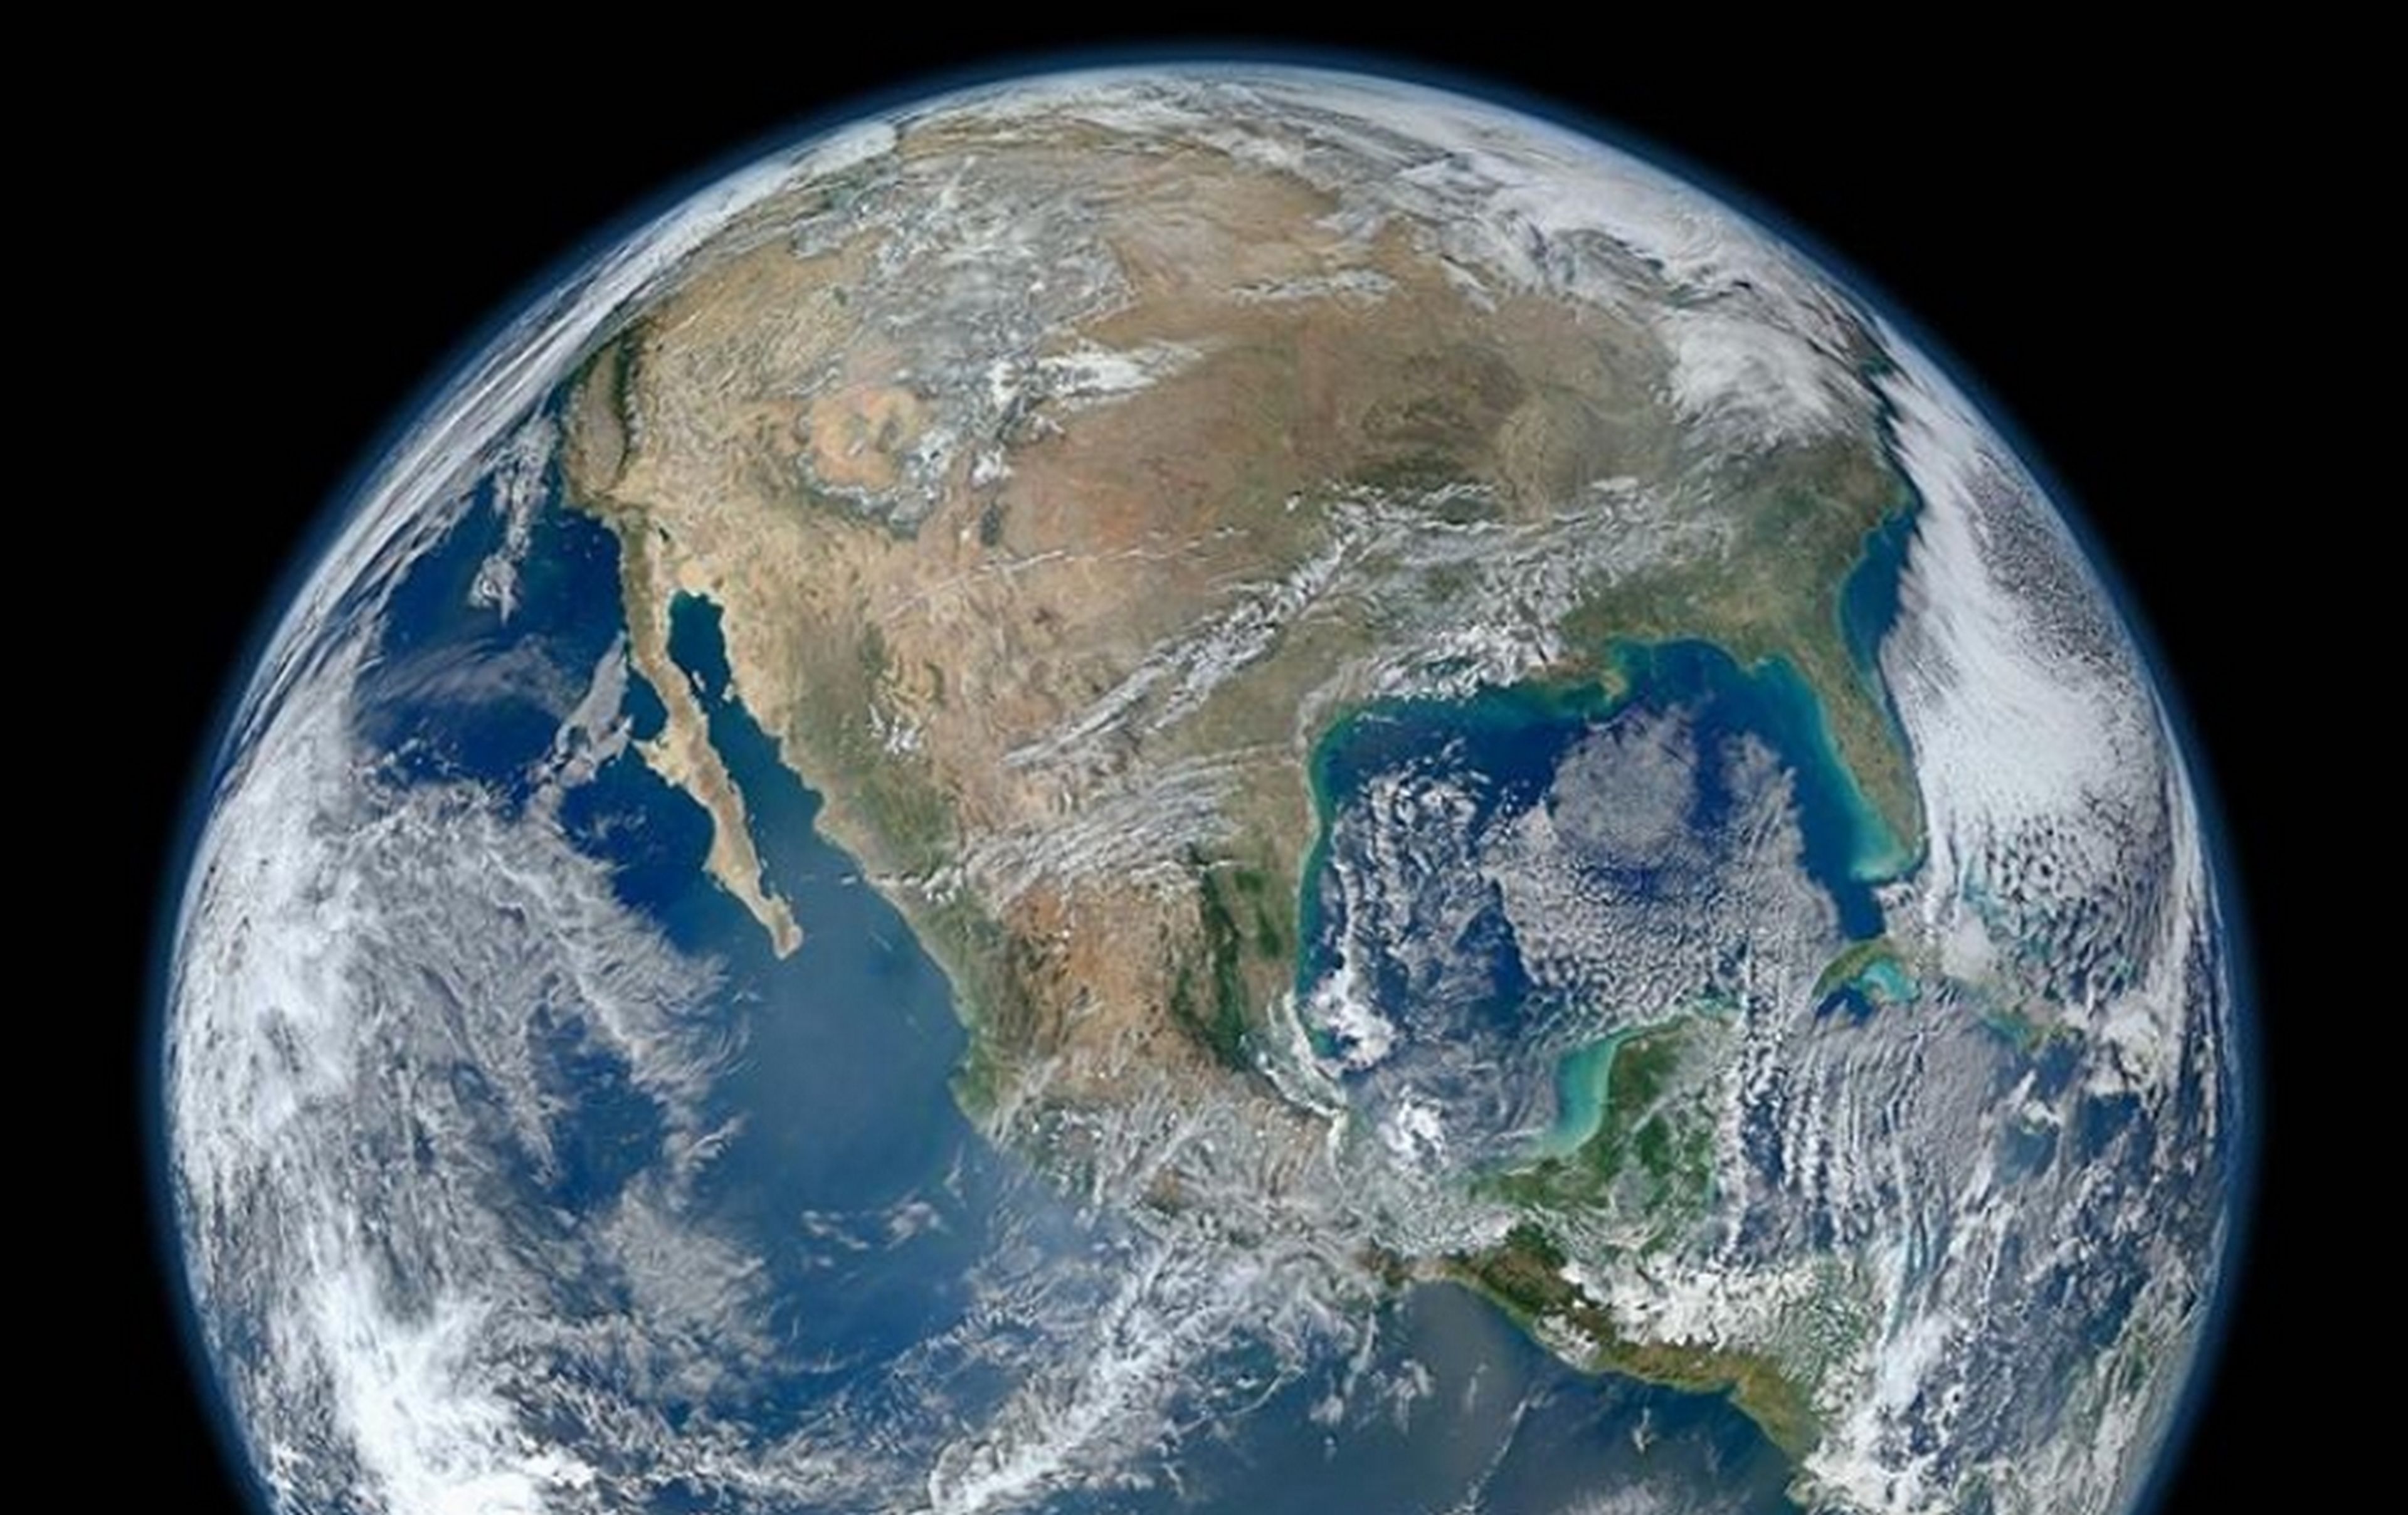 El fundador de Amazon crea Bezos Earth Fund y dona 10.000 millones de dólares contra el cambio climático